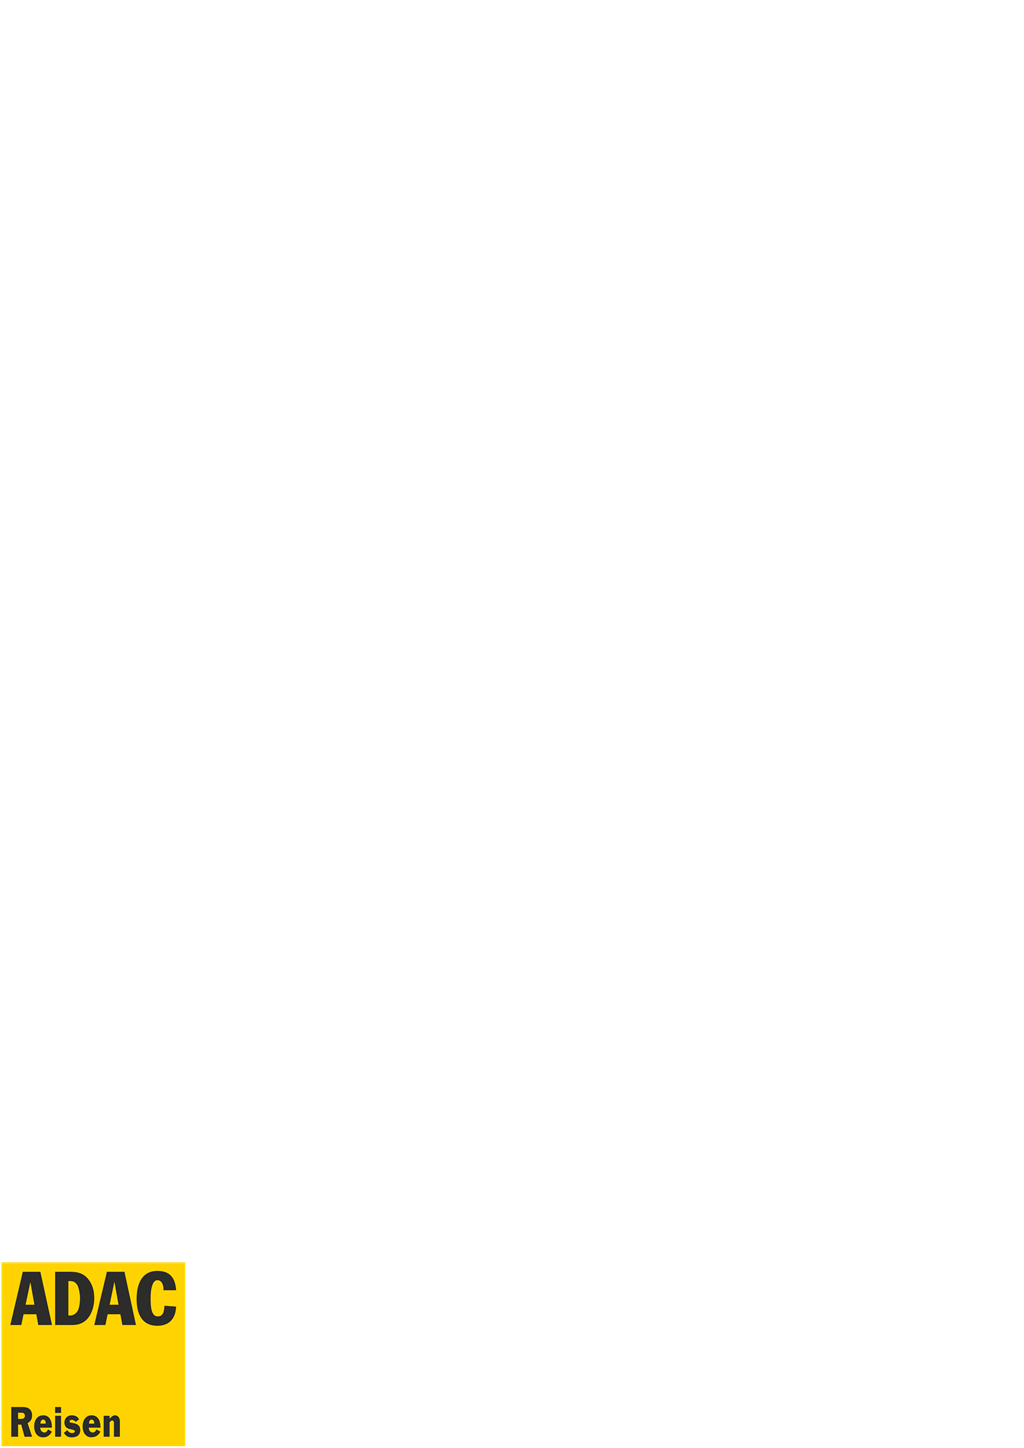 ADAC Reisen logotype, transparent .png, medium, large